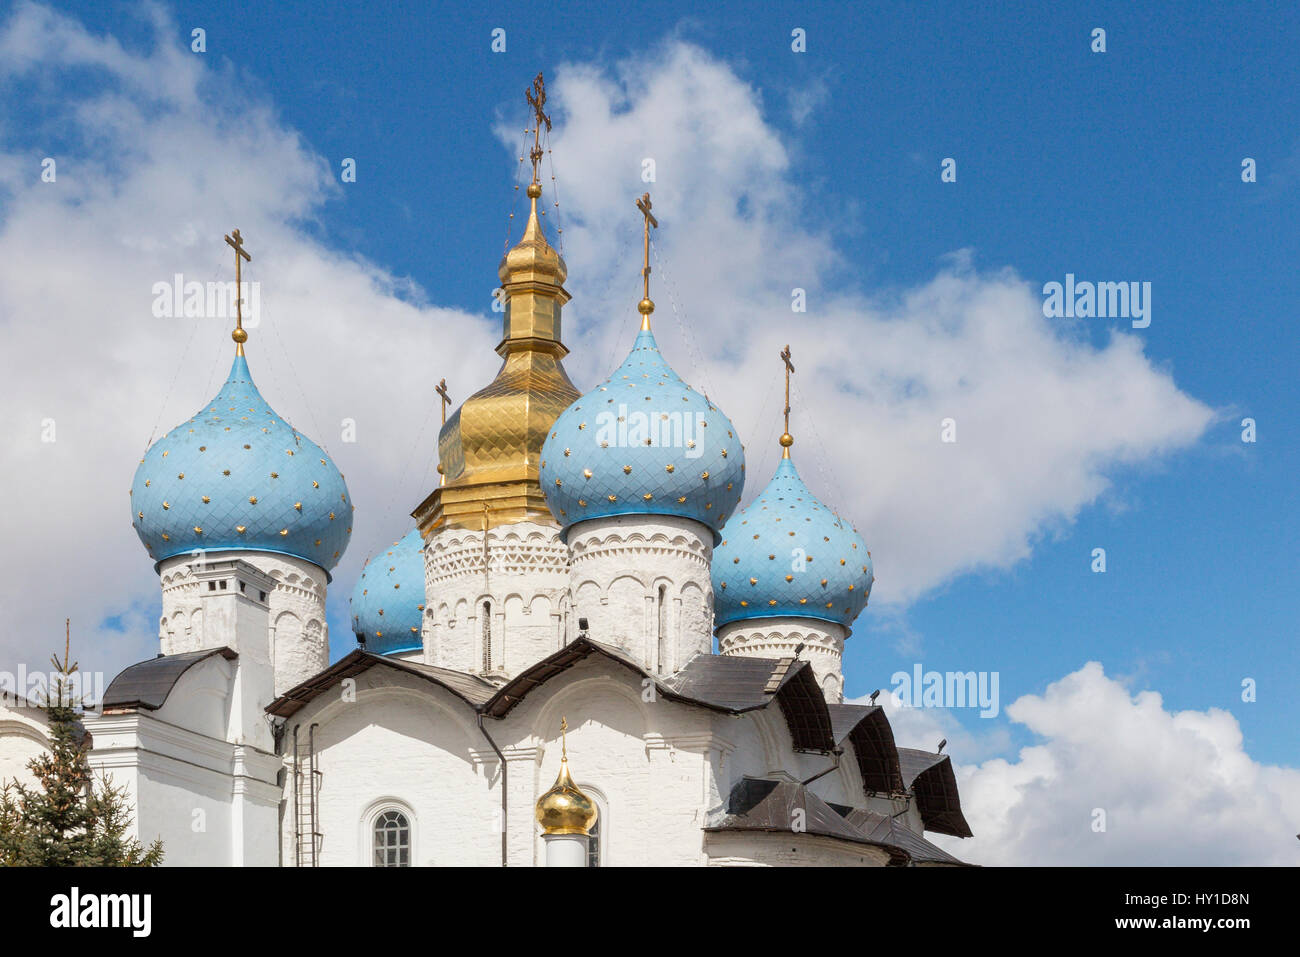 La cathédrale de l'annonciation Kremlin de Kazan Tatarstan, Russie Banque D'Images